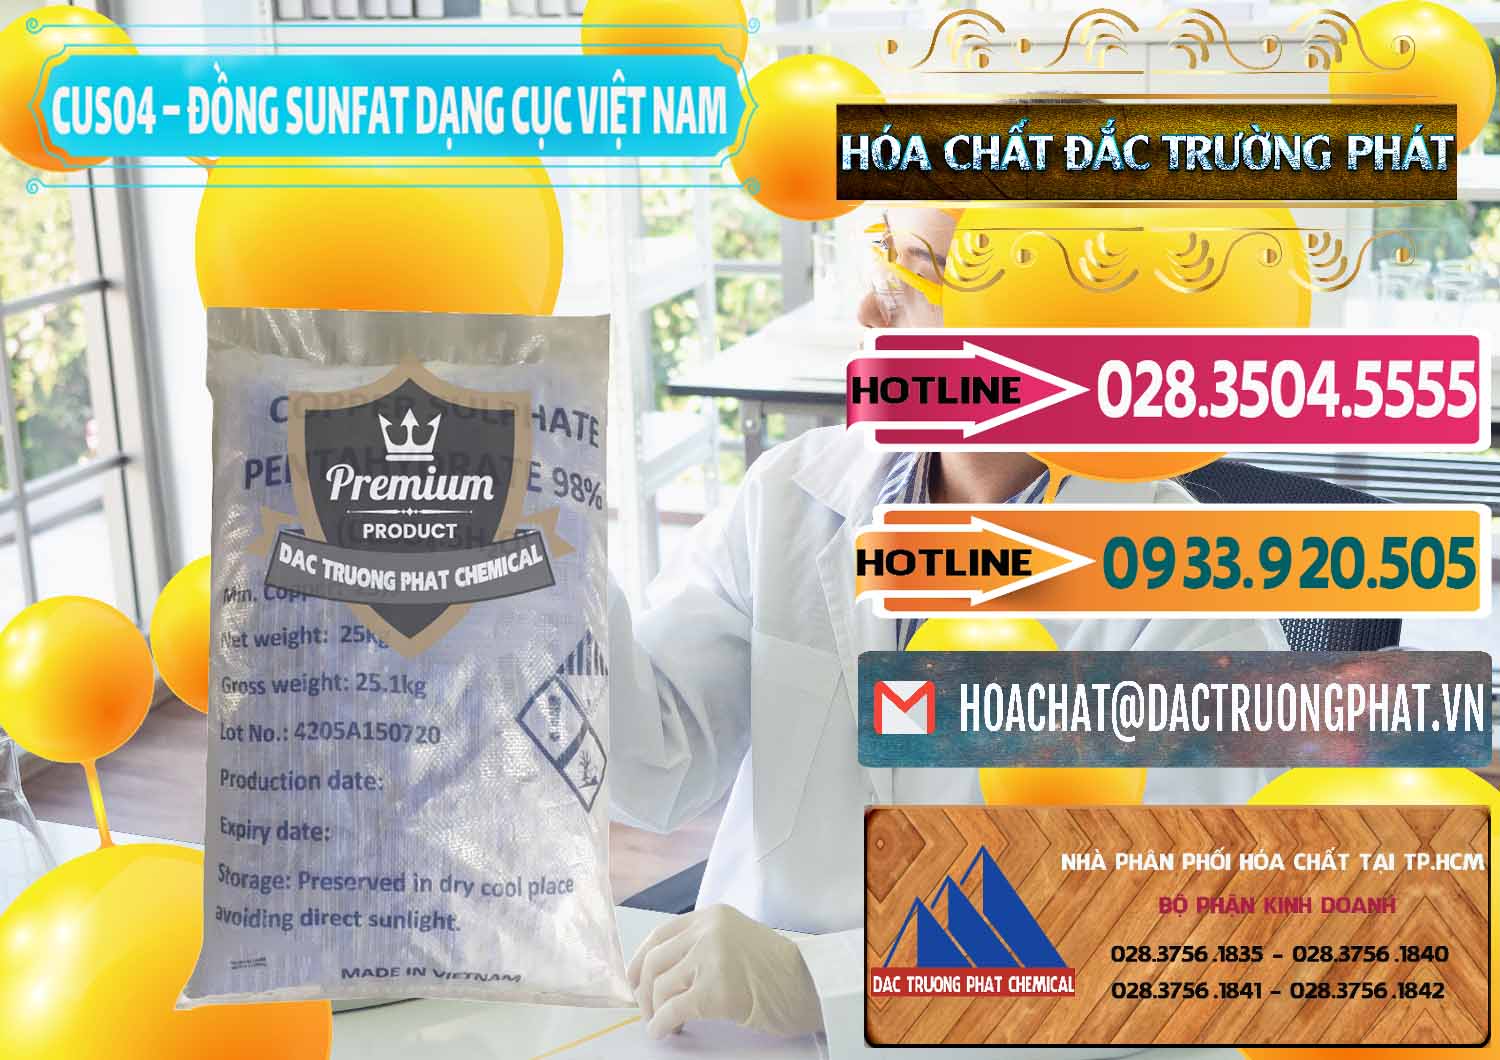 Chuyên bán và cung ứng CUSO4 – Đồng Sunfat Dạng Cục Việt Nam - 0303 - Nơi chuyên cung cấp và bán hóa chất tại TP.HCM - dactruongphat.vn